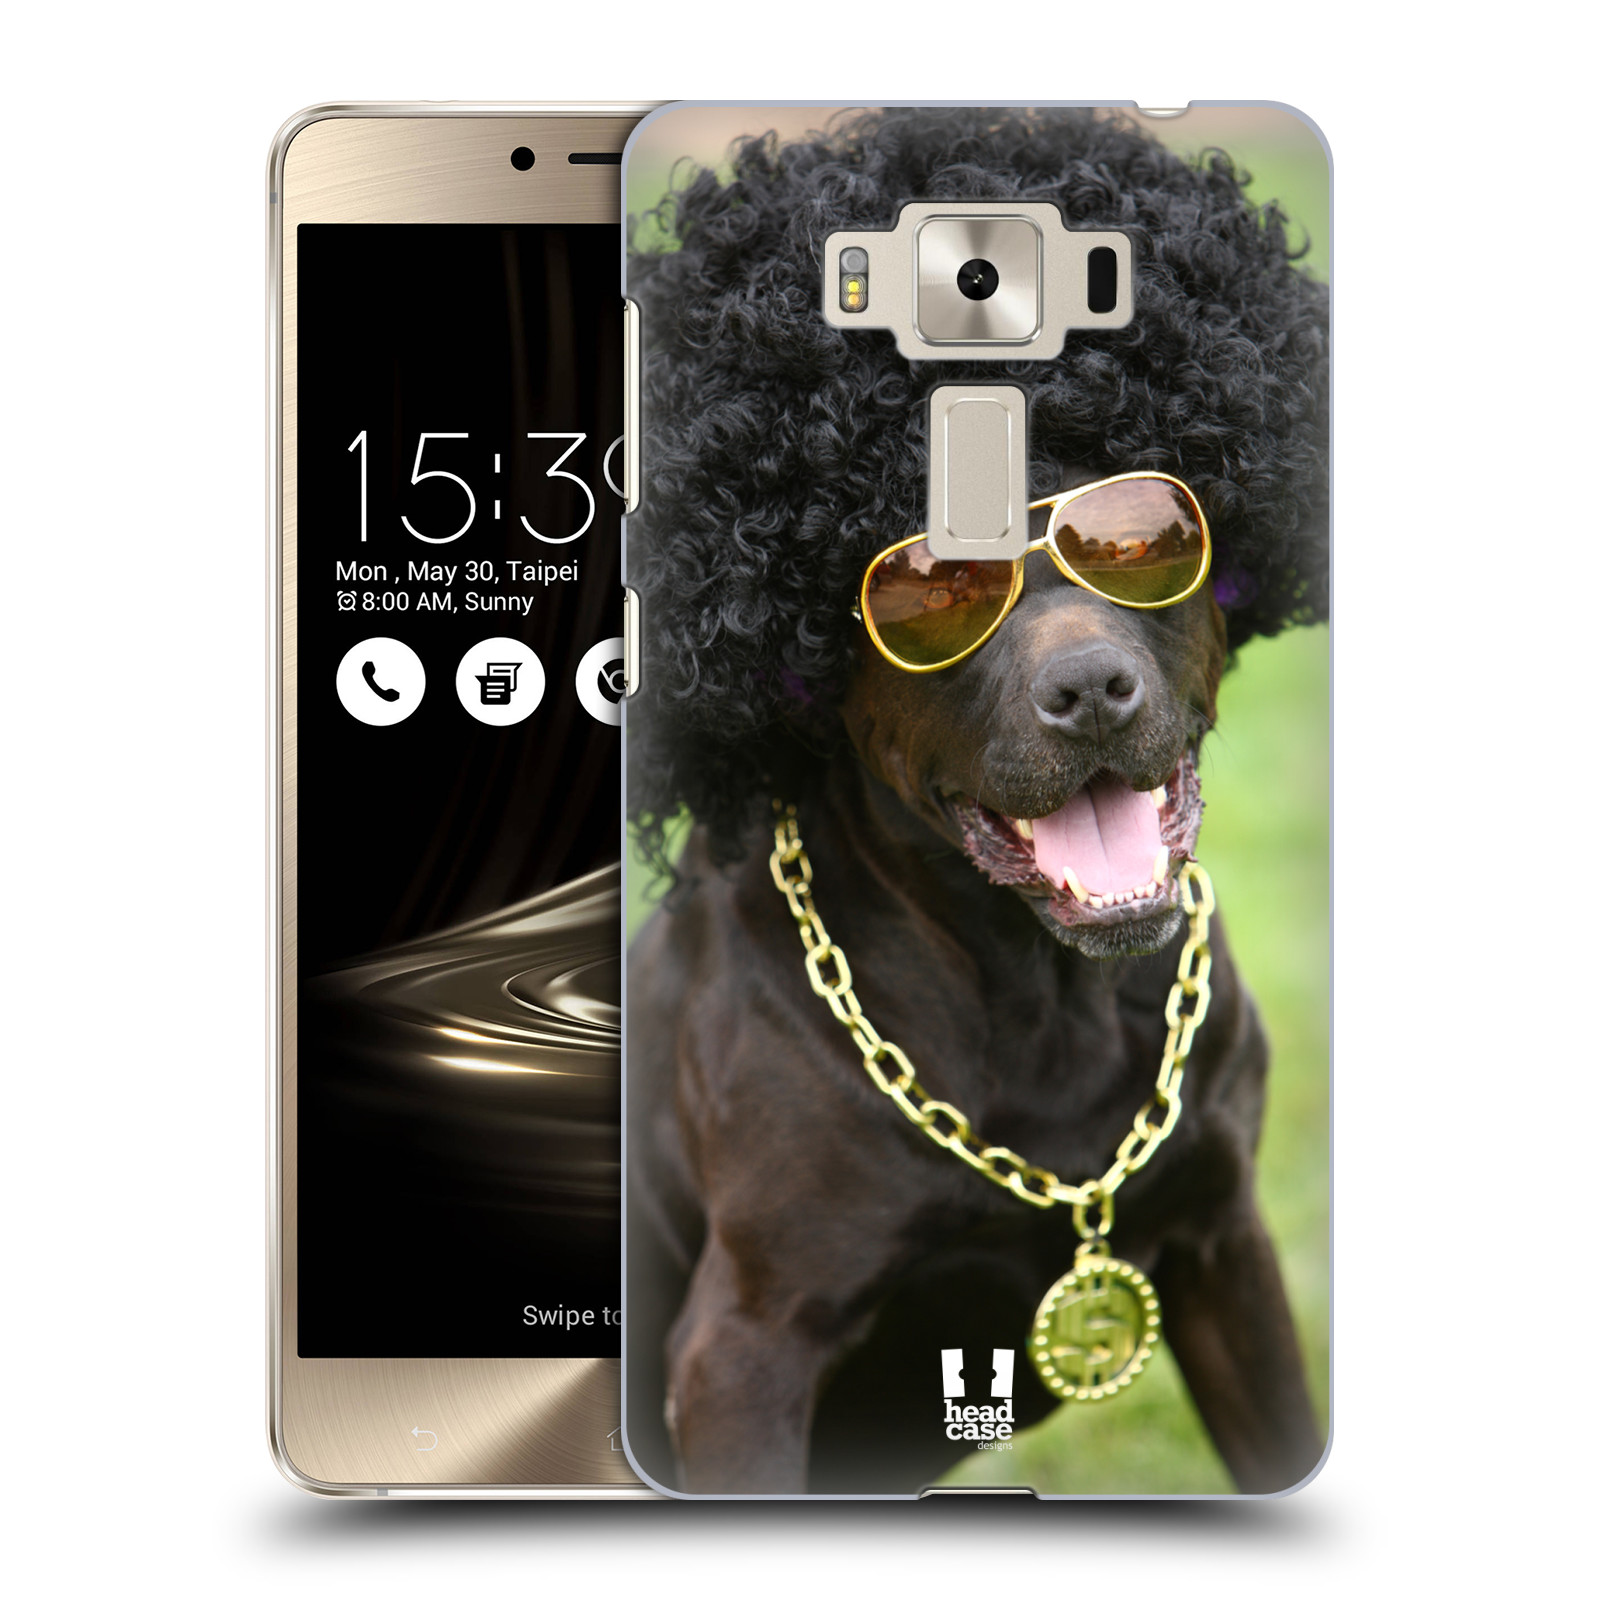 HEAD CASE plastový obal na mobil Asus Zenfone 3 DELUXE ZS550KL vzor Legrační zvířátka pejsek boháč